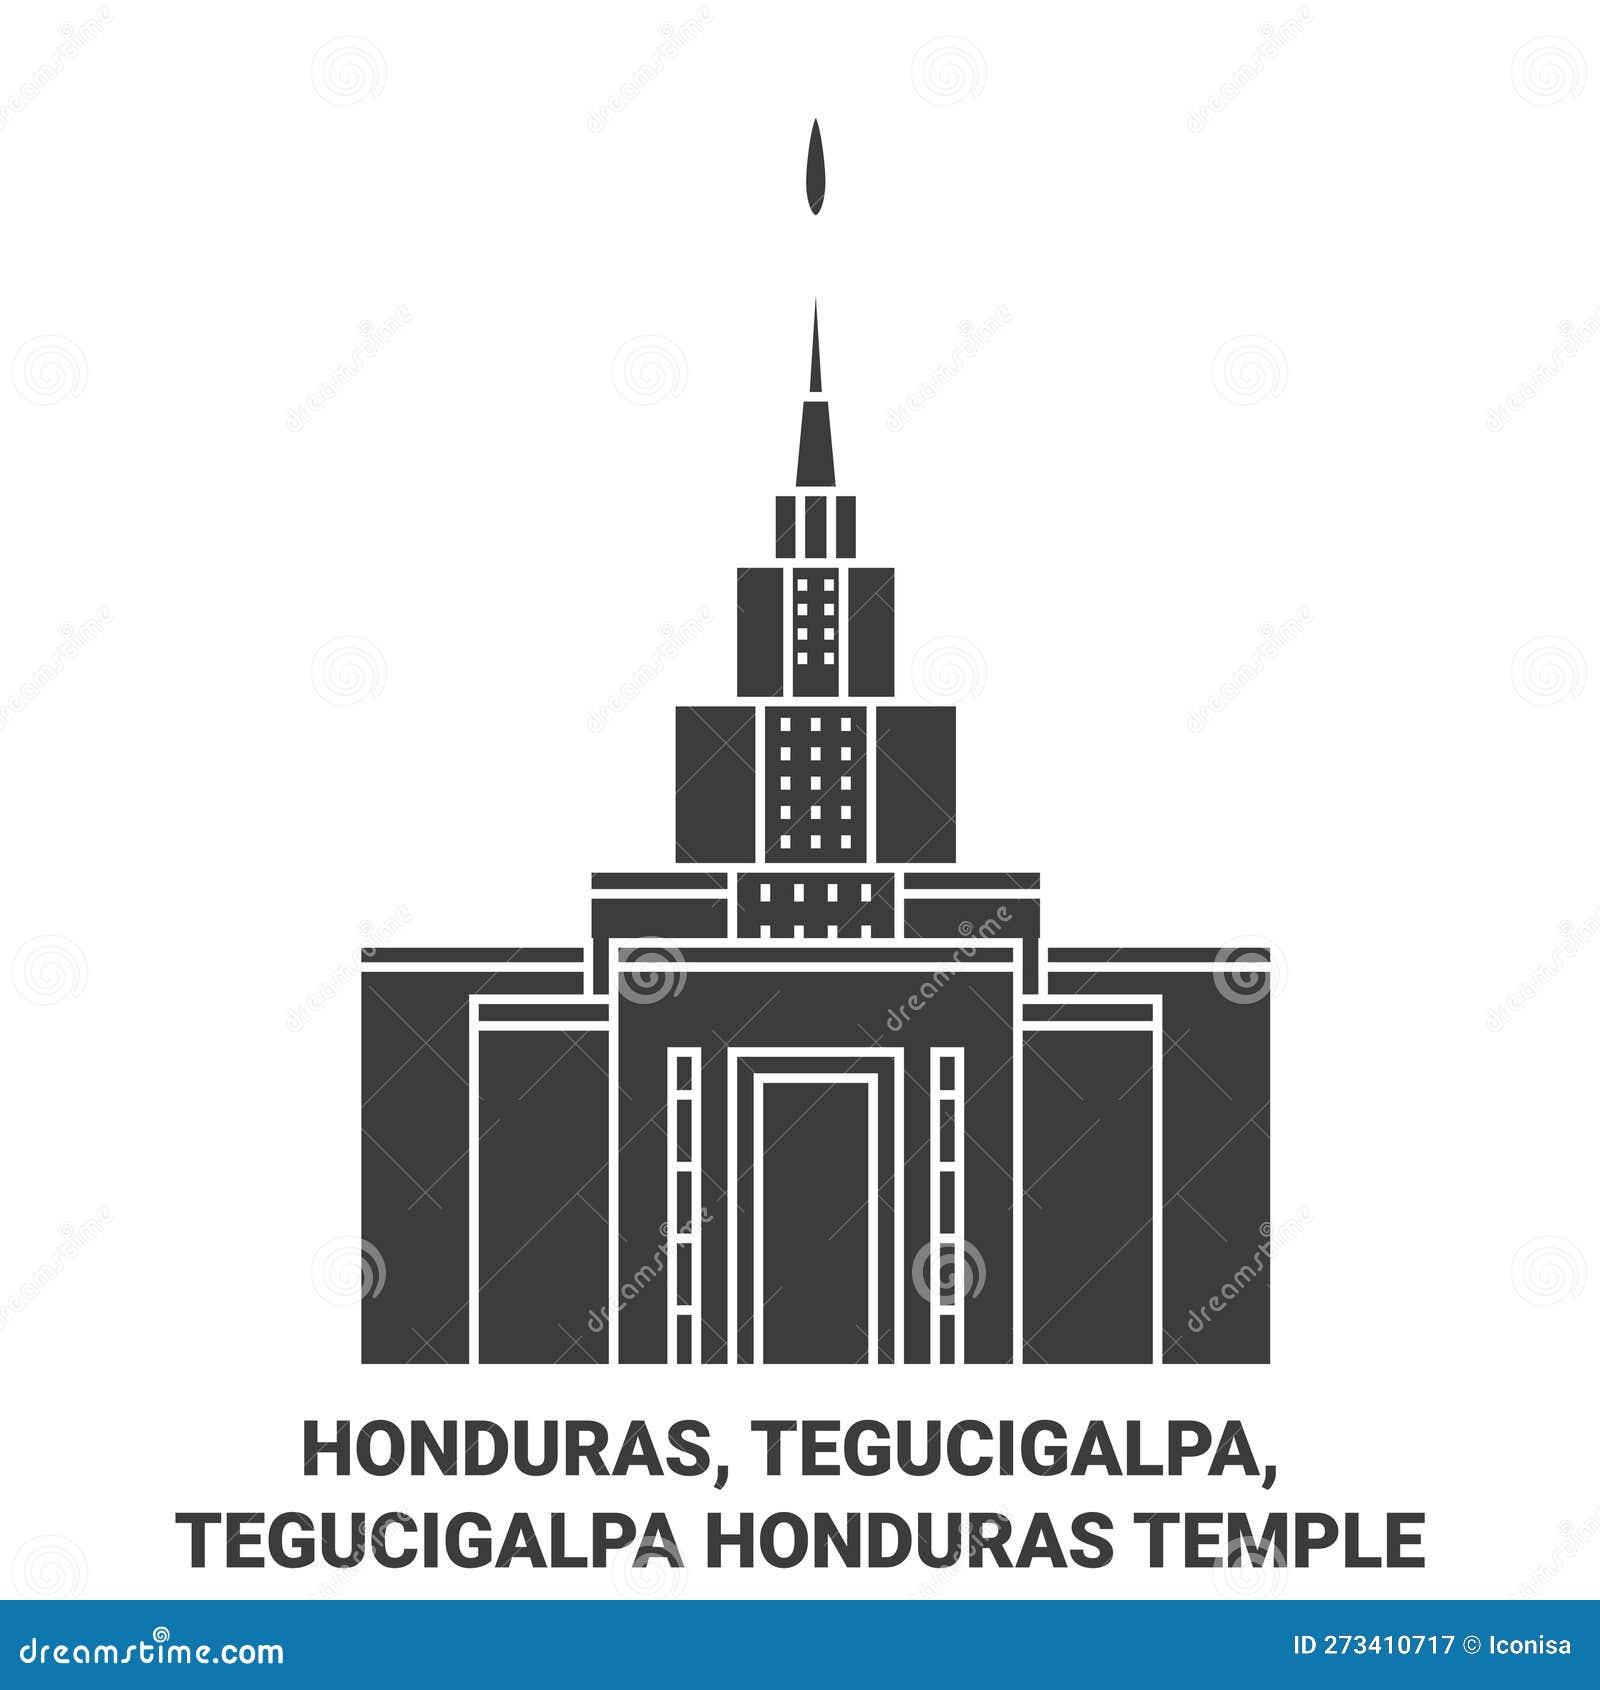 honduras, tegucigalpa, tegucigalpa honduras temple travel landmark  